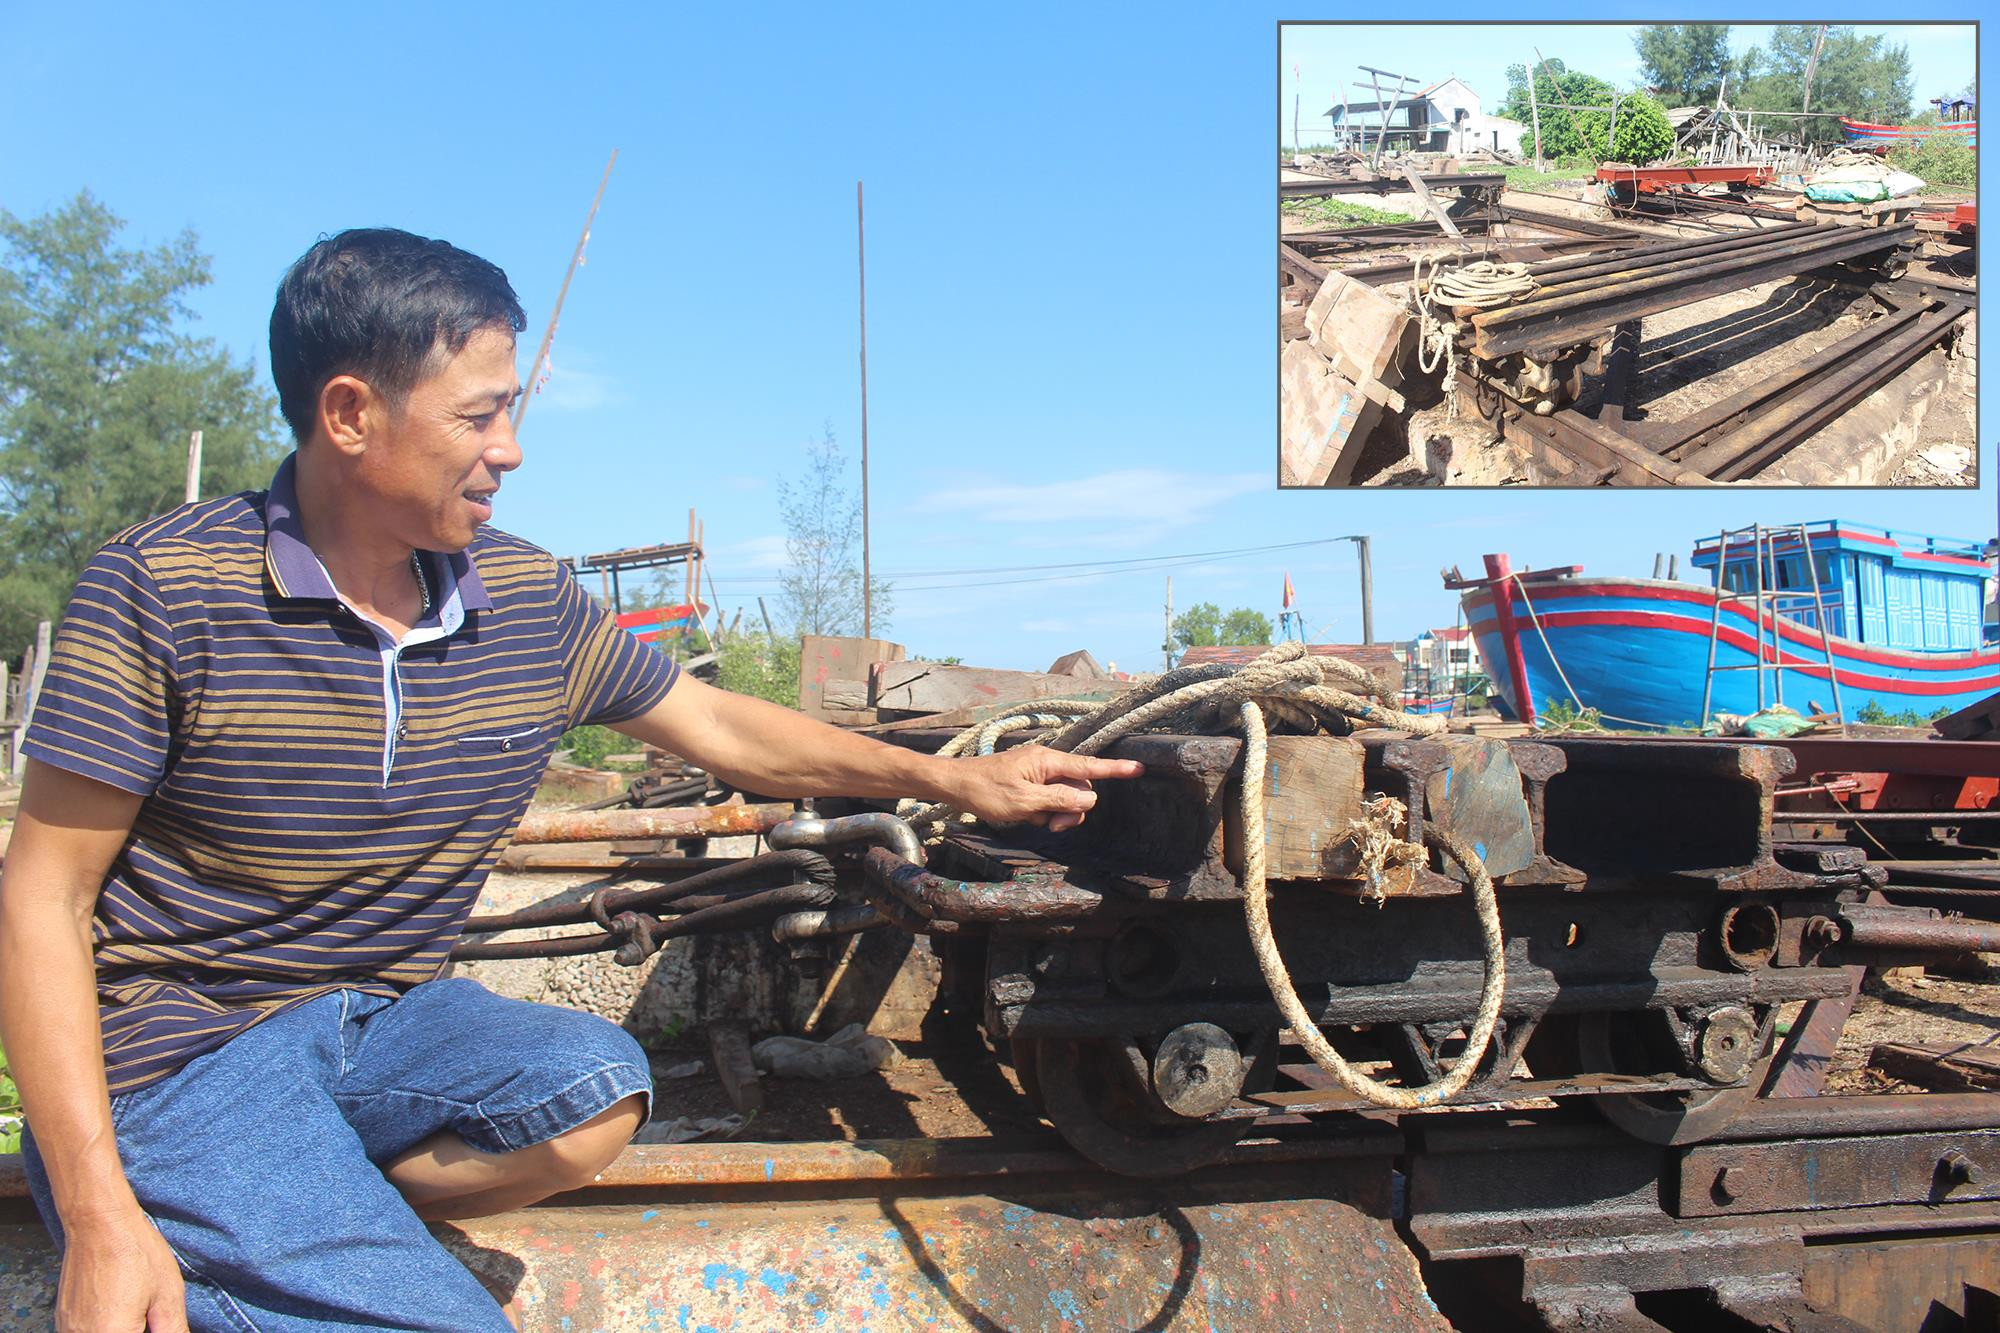 Do lâu ngày không hoạt động, cơ sở đóng tàu của ông Nguyễn Văn Xang ở xã Quỳnh Thọ (Quỳnh Lưu) có nguy cơ thua lỗ do máy móc hàng tỷ đồng hư hỏng